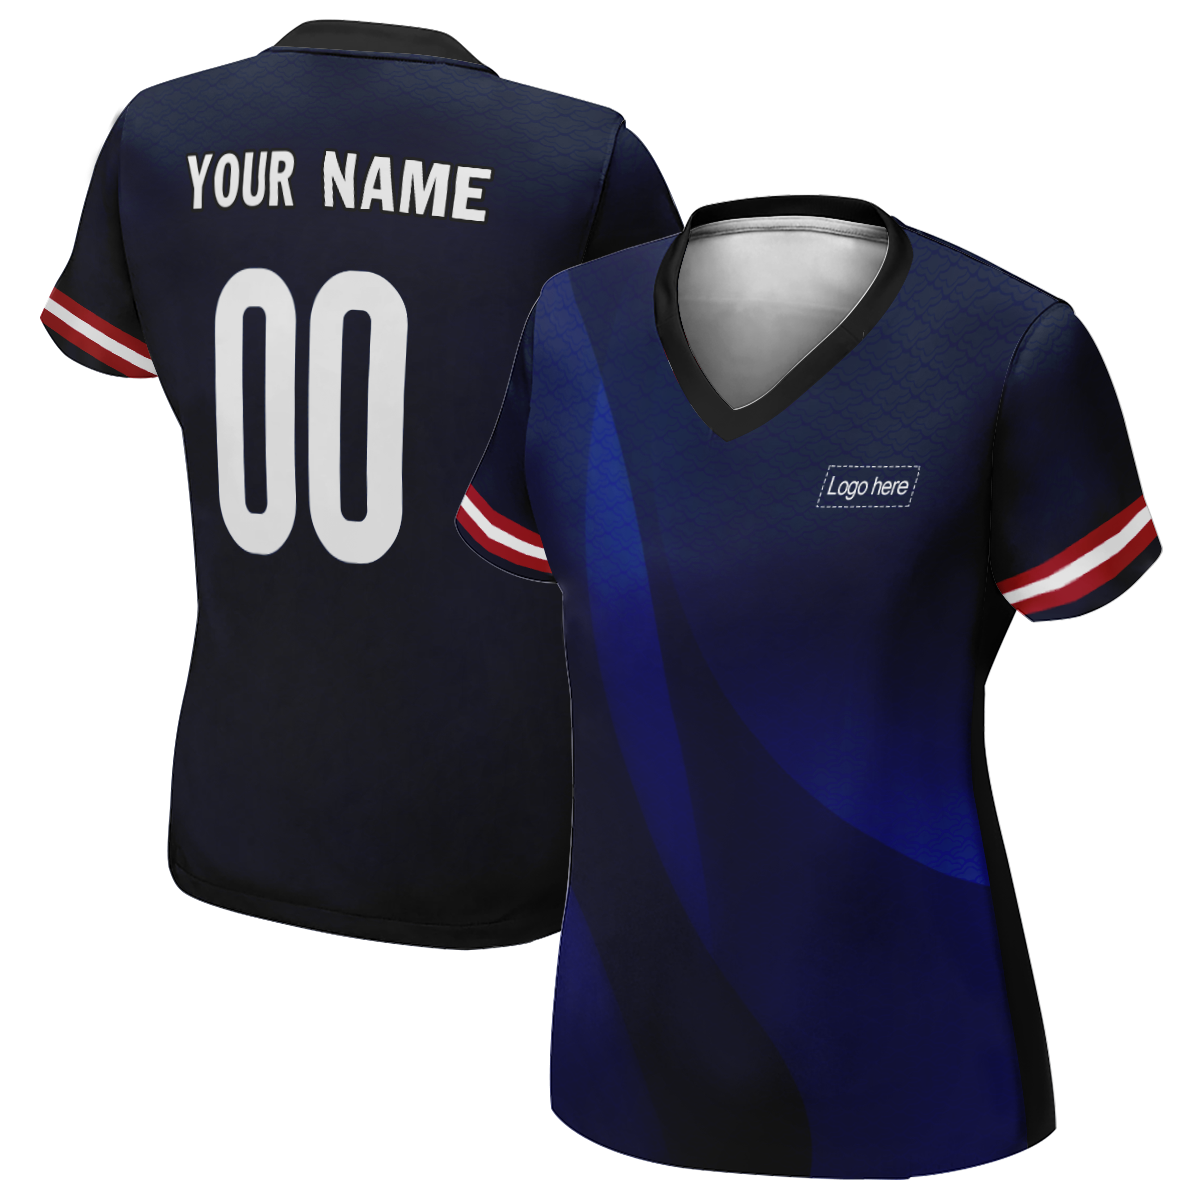 Camiseta de fútbol personalizada con nombre Lax US World Cup para mujer